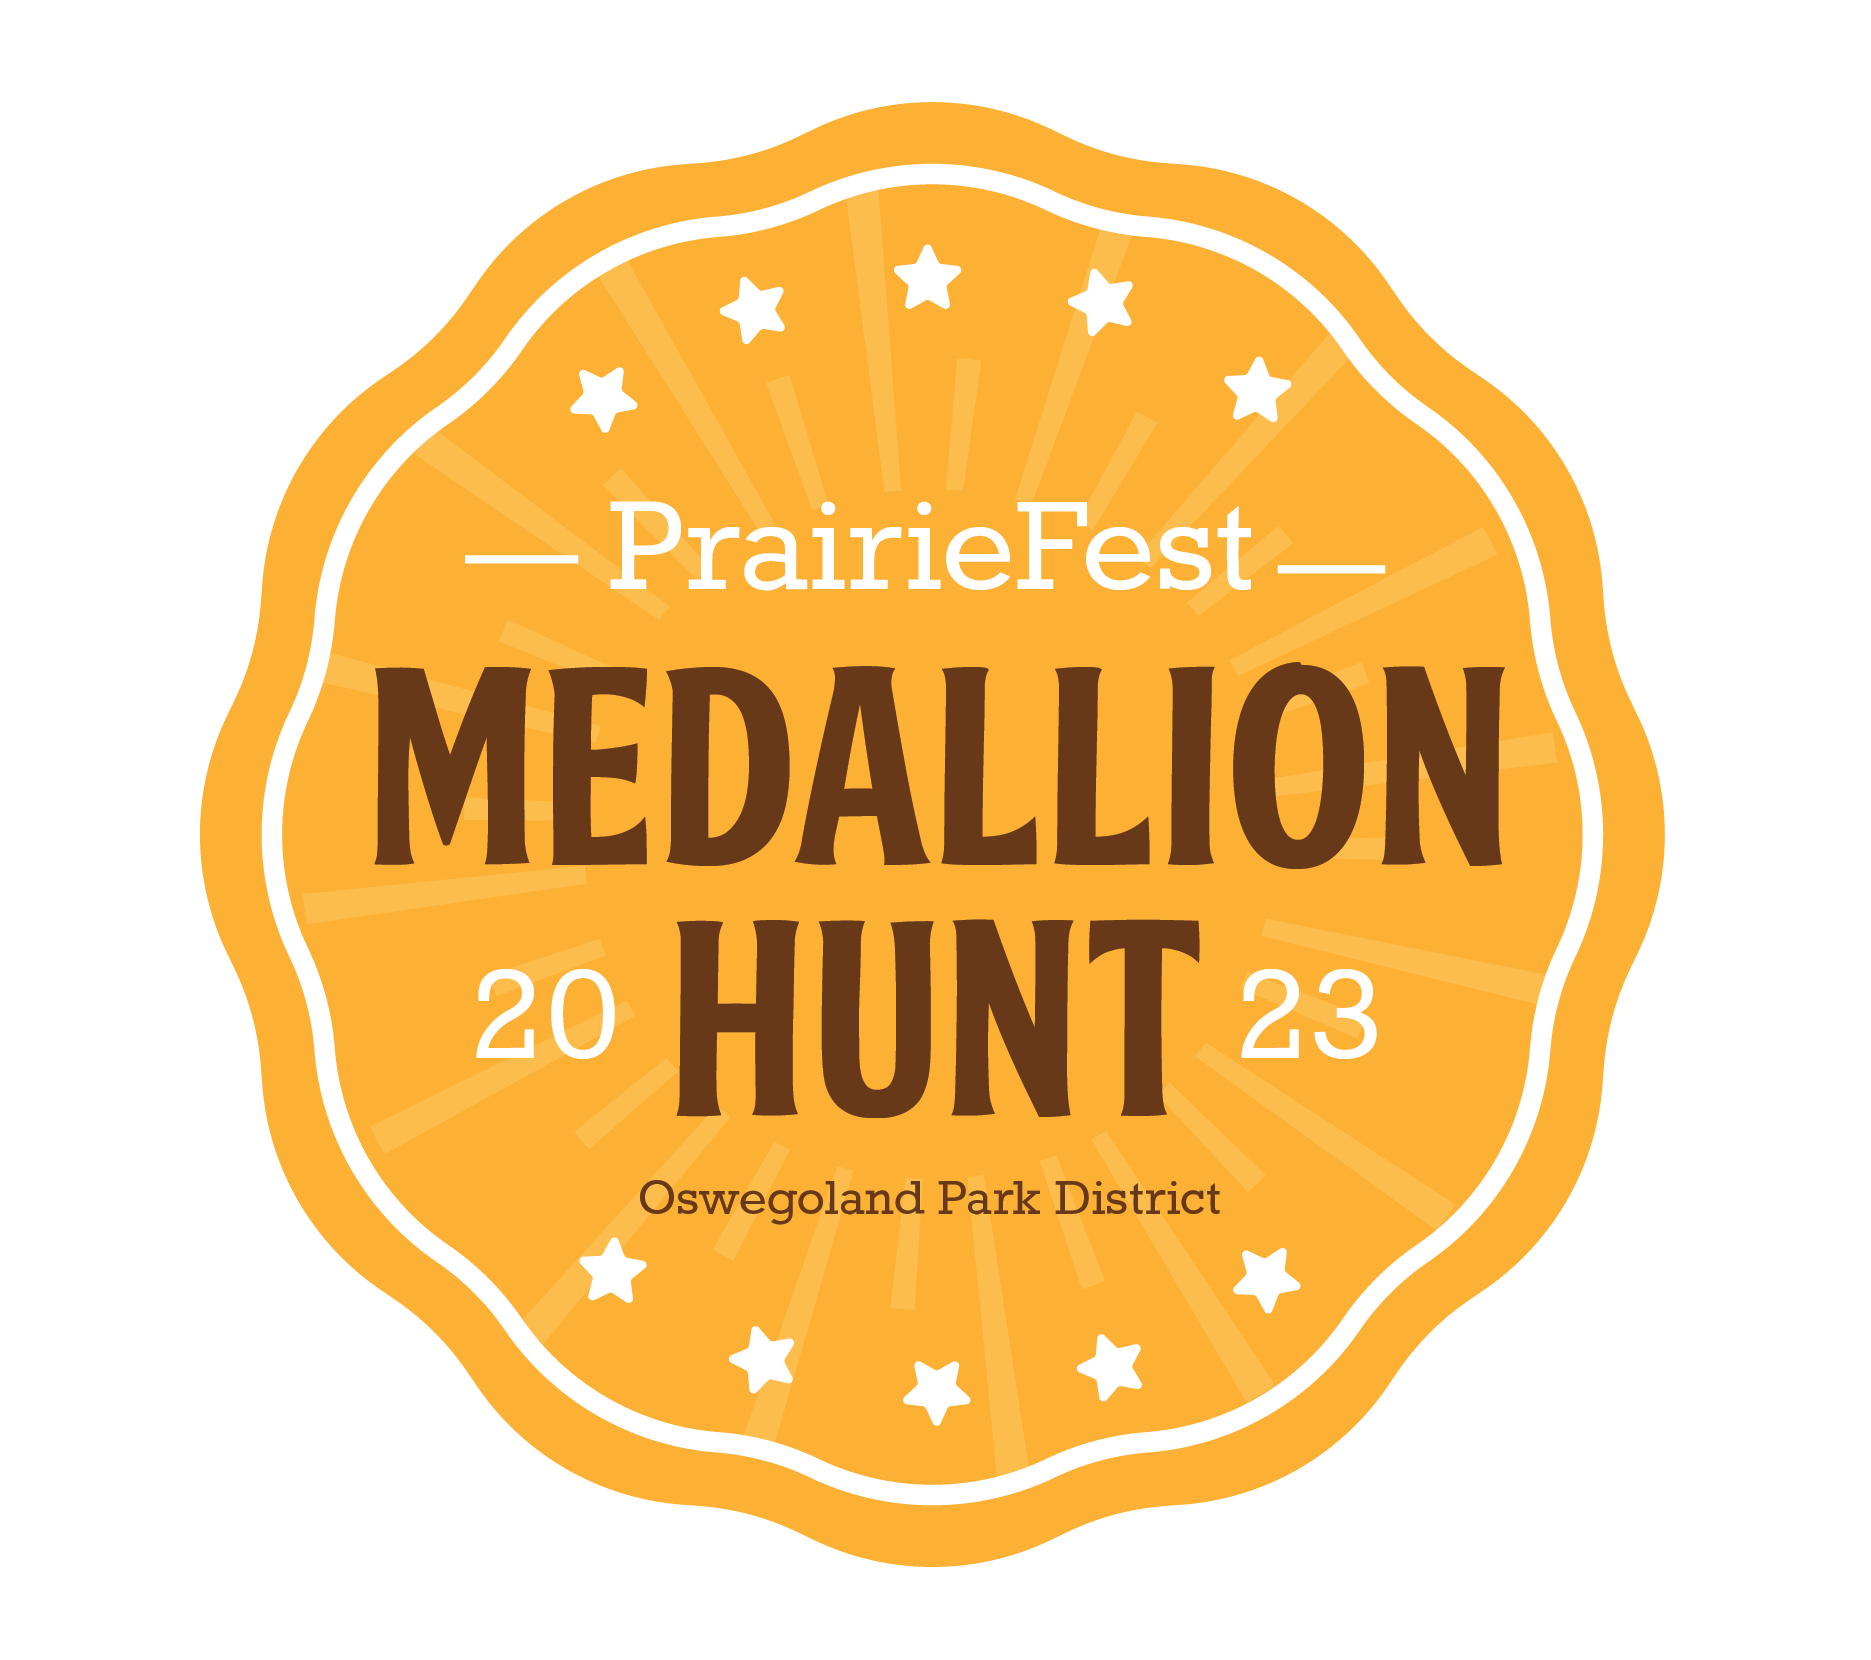 PrairieFest Medallion Hunt Graphic